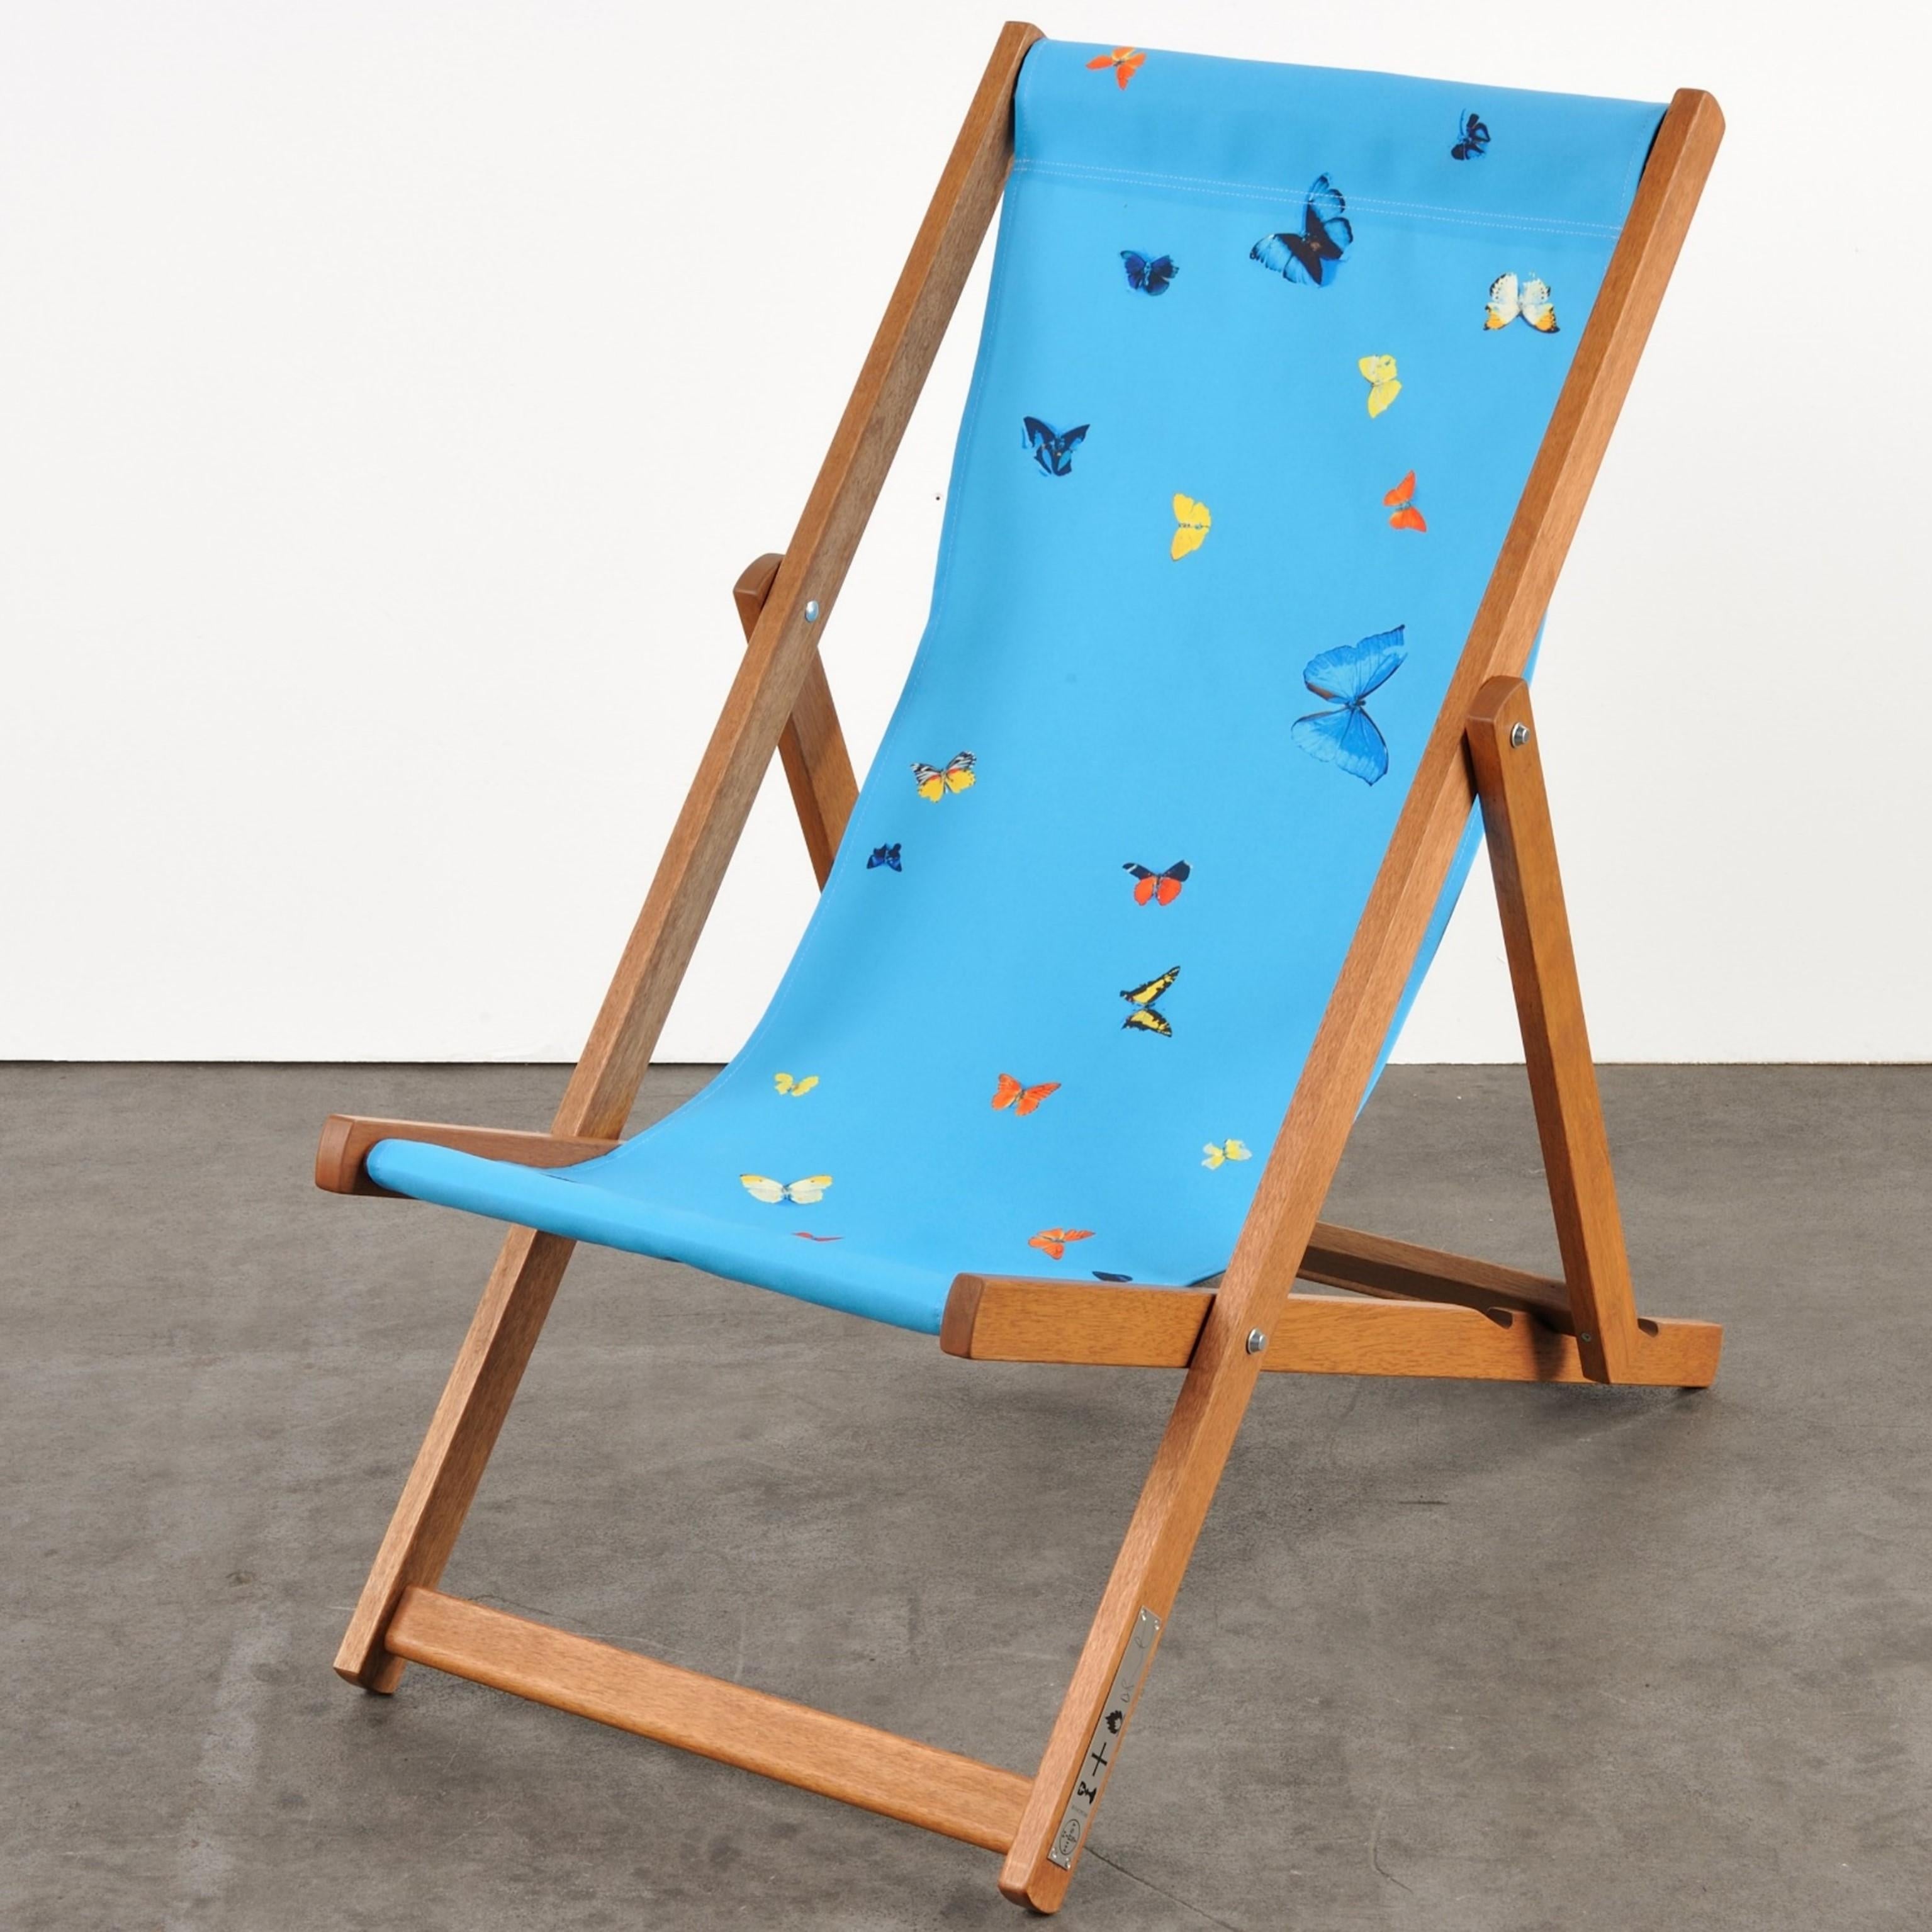 Les Deckchairs de Hirst reprennent l'un des motifs familiers de l'artiste : un fond monochrome interrompu par un éparpillement de papillons figés dans une position éternelle. 

Damien Hirst
Deckchair (Sky Blue) - Art contemporain, 21ème siècle,